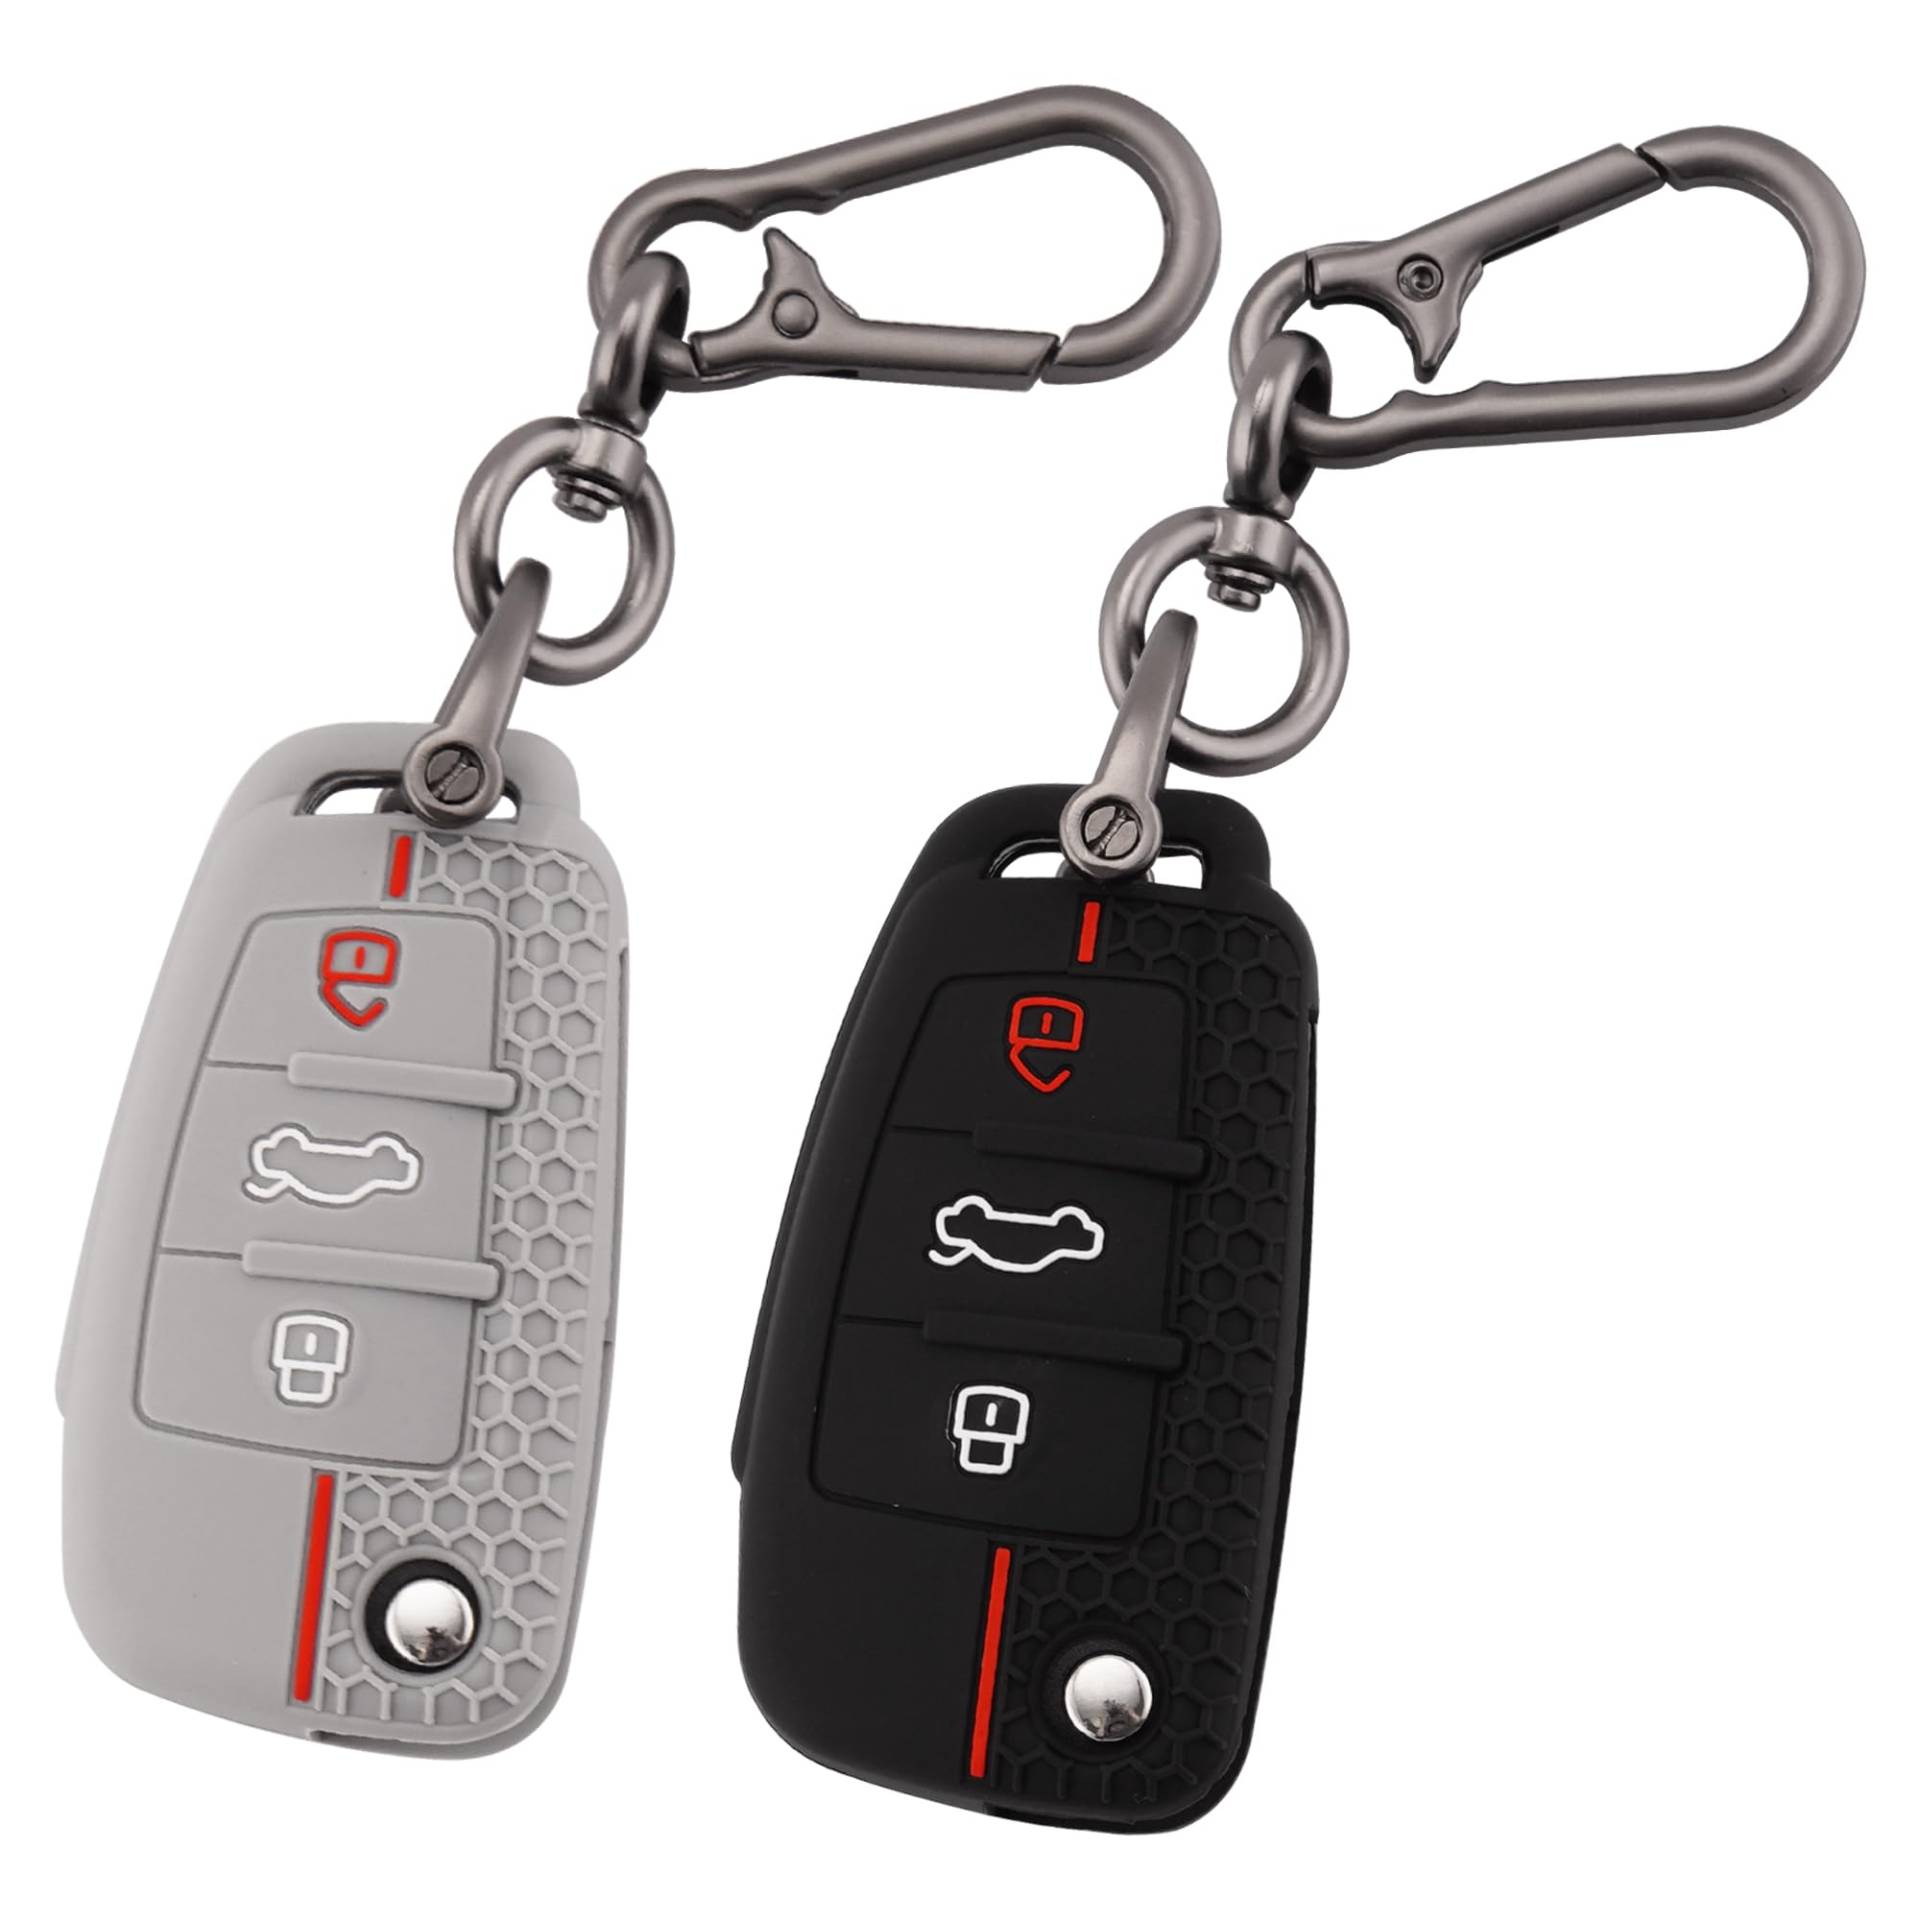 ERMWALR Autoschlüsselhülle für Audi mit Schlüsselanhänger, 3 Tasten, Silikon-Schlüsselschutzhülle, passend für Audi A1, A3, A4, A6, A8, Q2, Q3, Q7, S3, S6, RS3, RS6, R8, TT, TTS, 2 Stück (Ad-3-BG) von ERMWALR